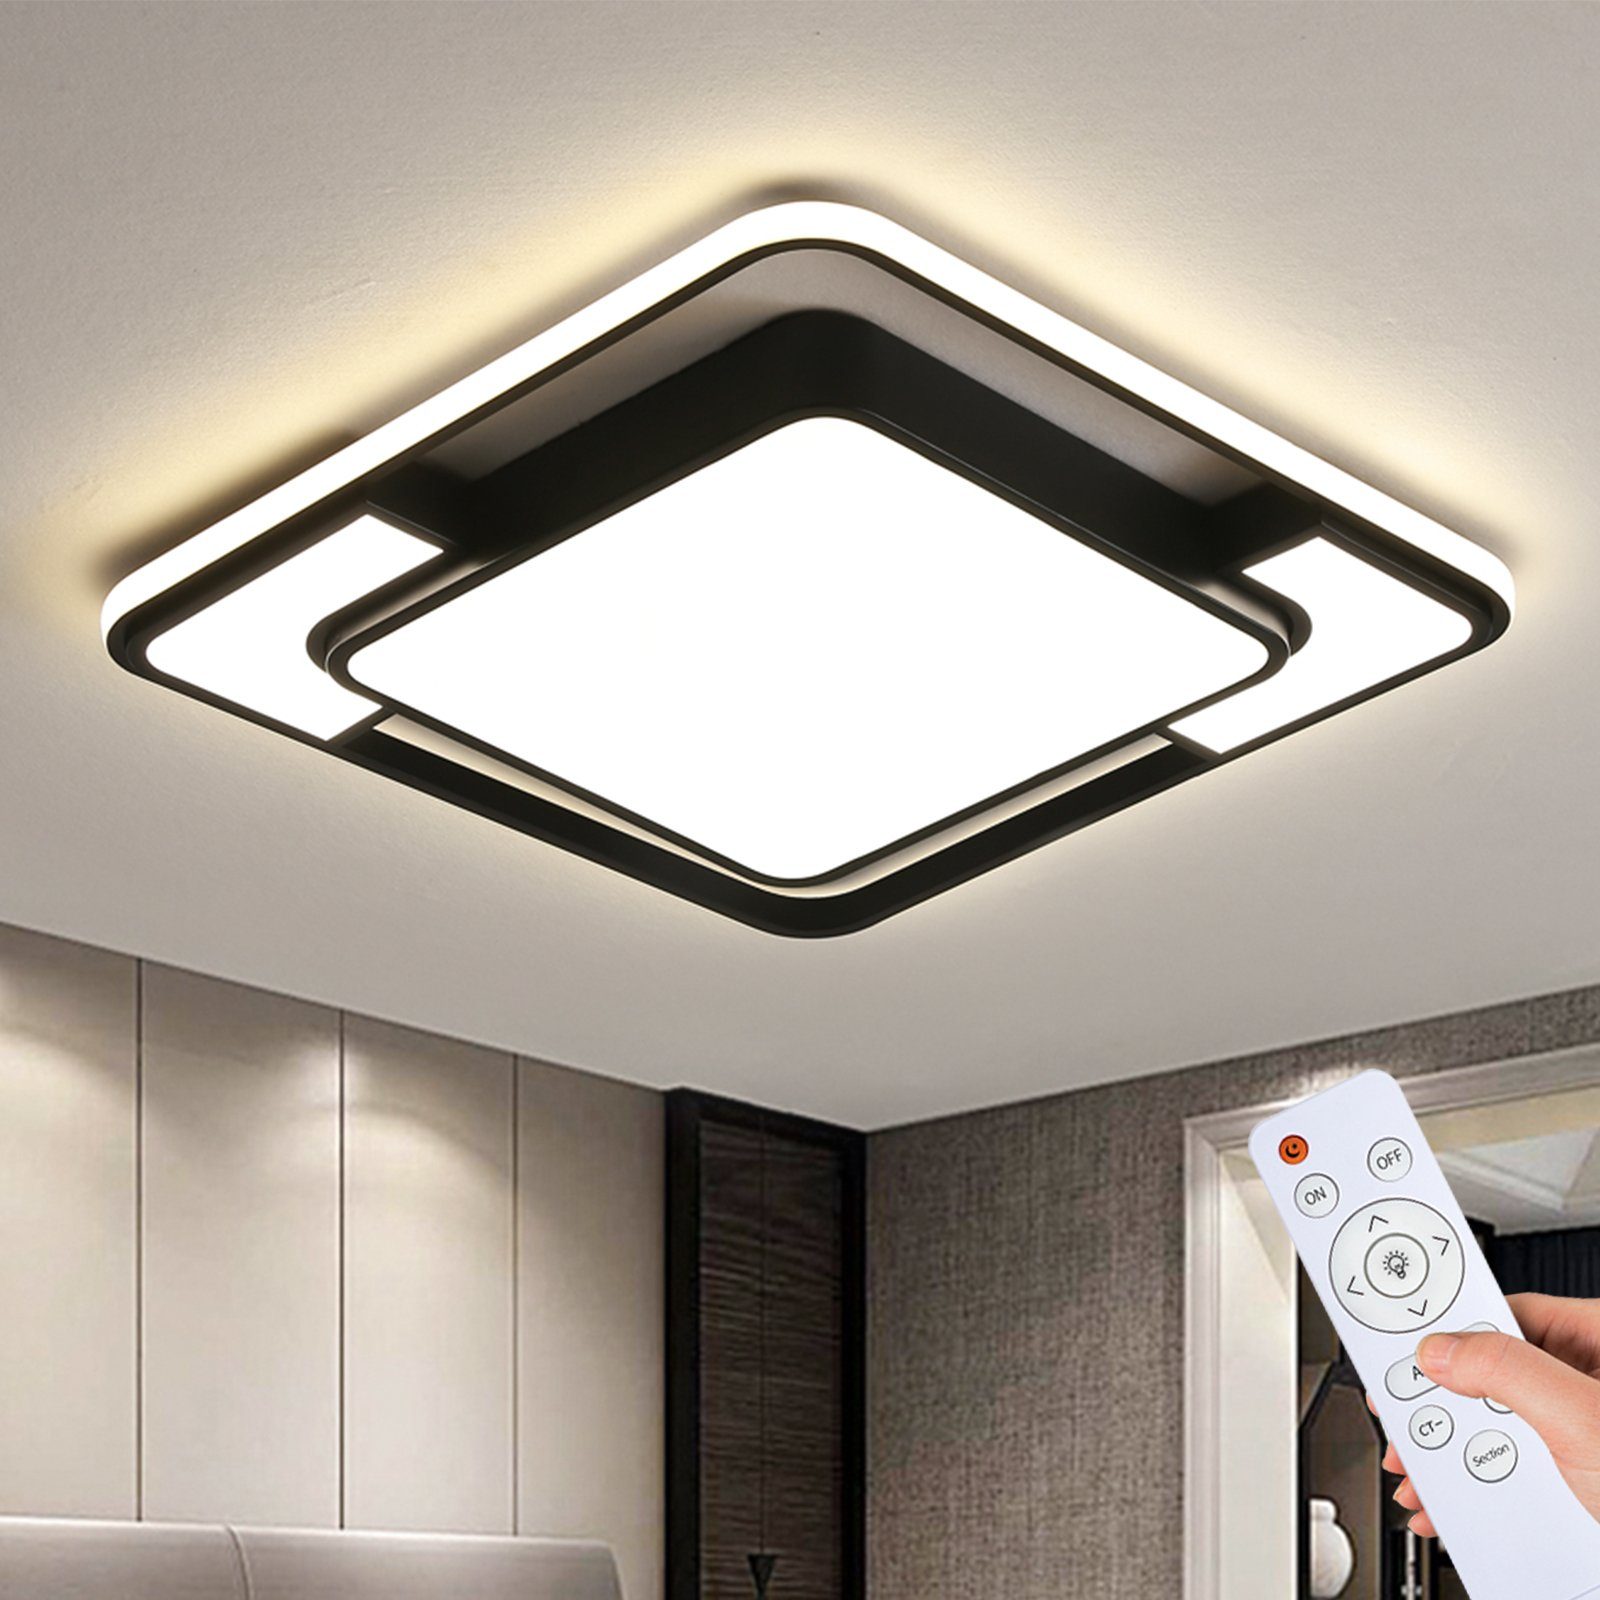 LED Decken Leuchte Lampe Küchen Beleuchtung Wohnzimmer Schlafzimmer Bad Lampen 